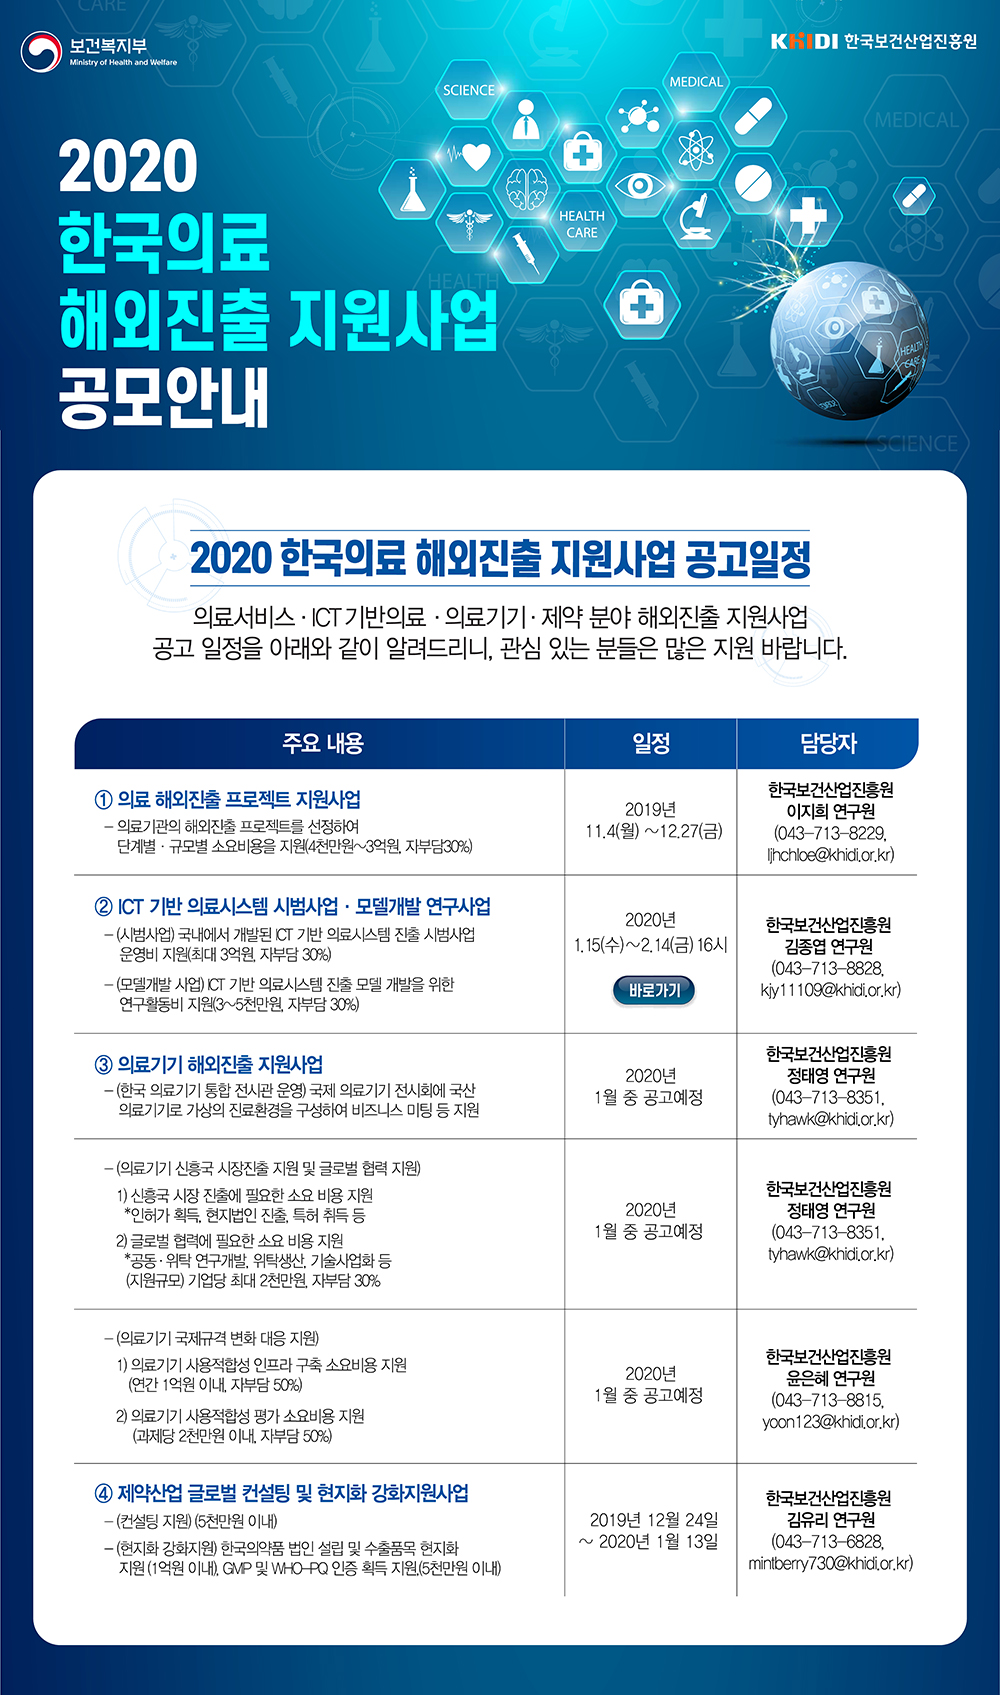 2020 한국의료 해외진출 지원사업 공모안내 - 자세한 내용은 첨부된 파일을 다운받아 확인해 주세요.